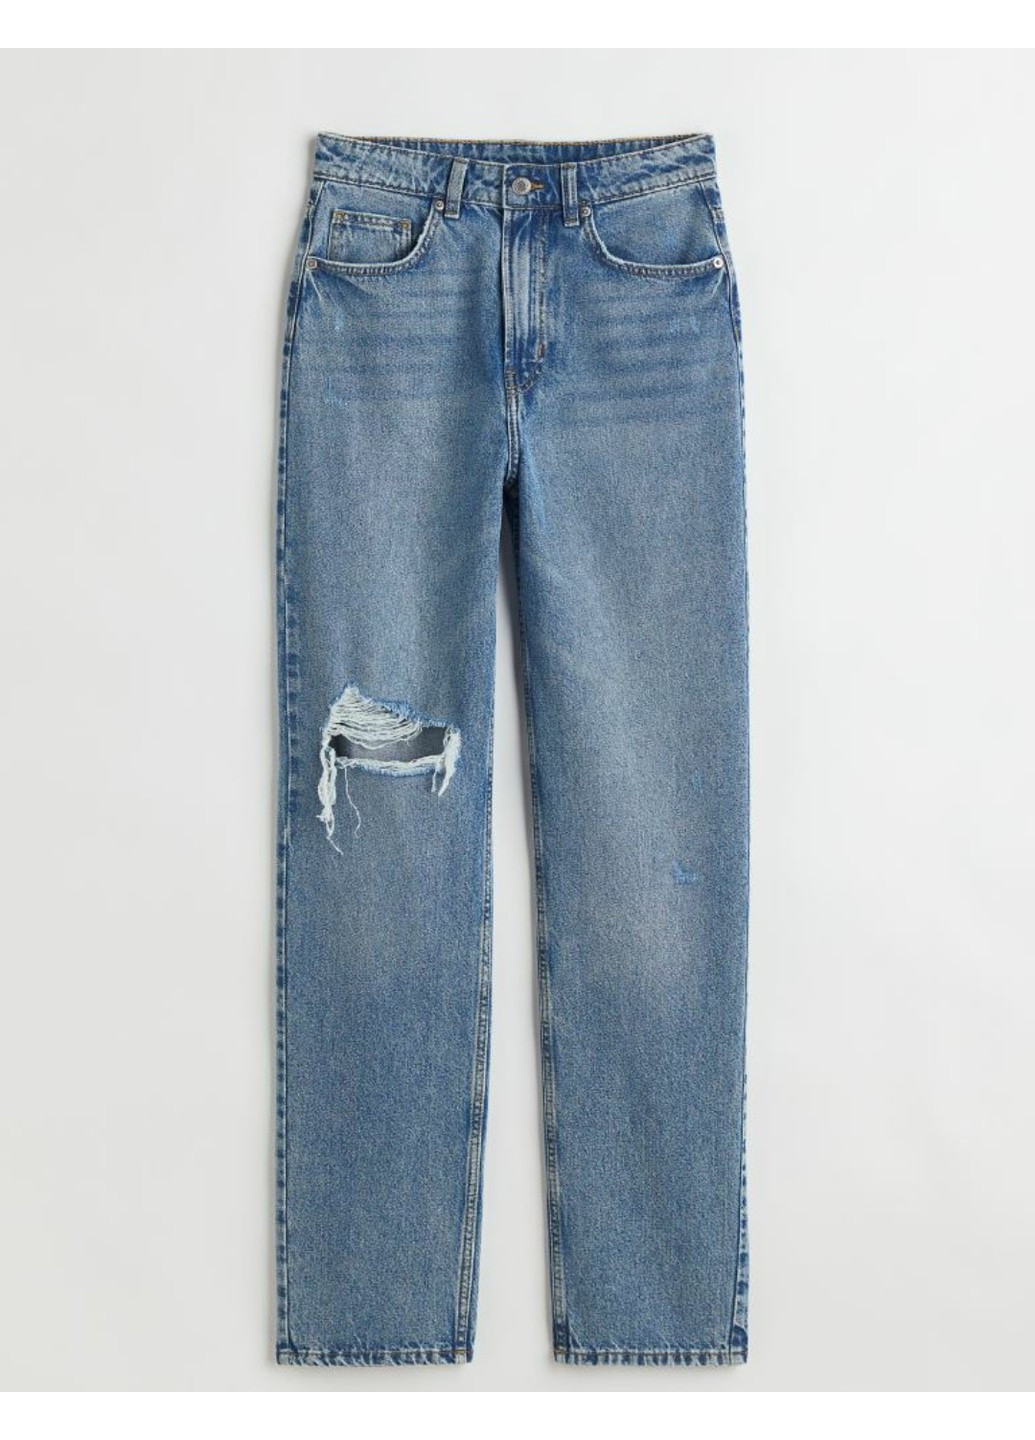 Жіночі джинси з високою талією в стилі 90-х Н&М (55606) 36 Сині H&M - (258744236)